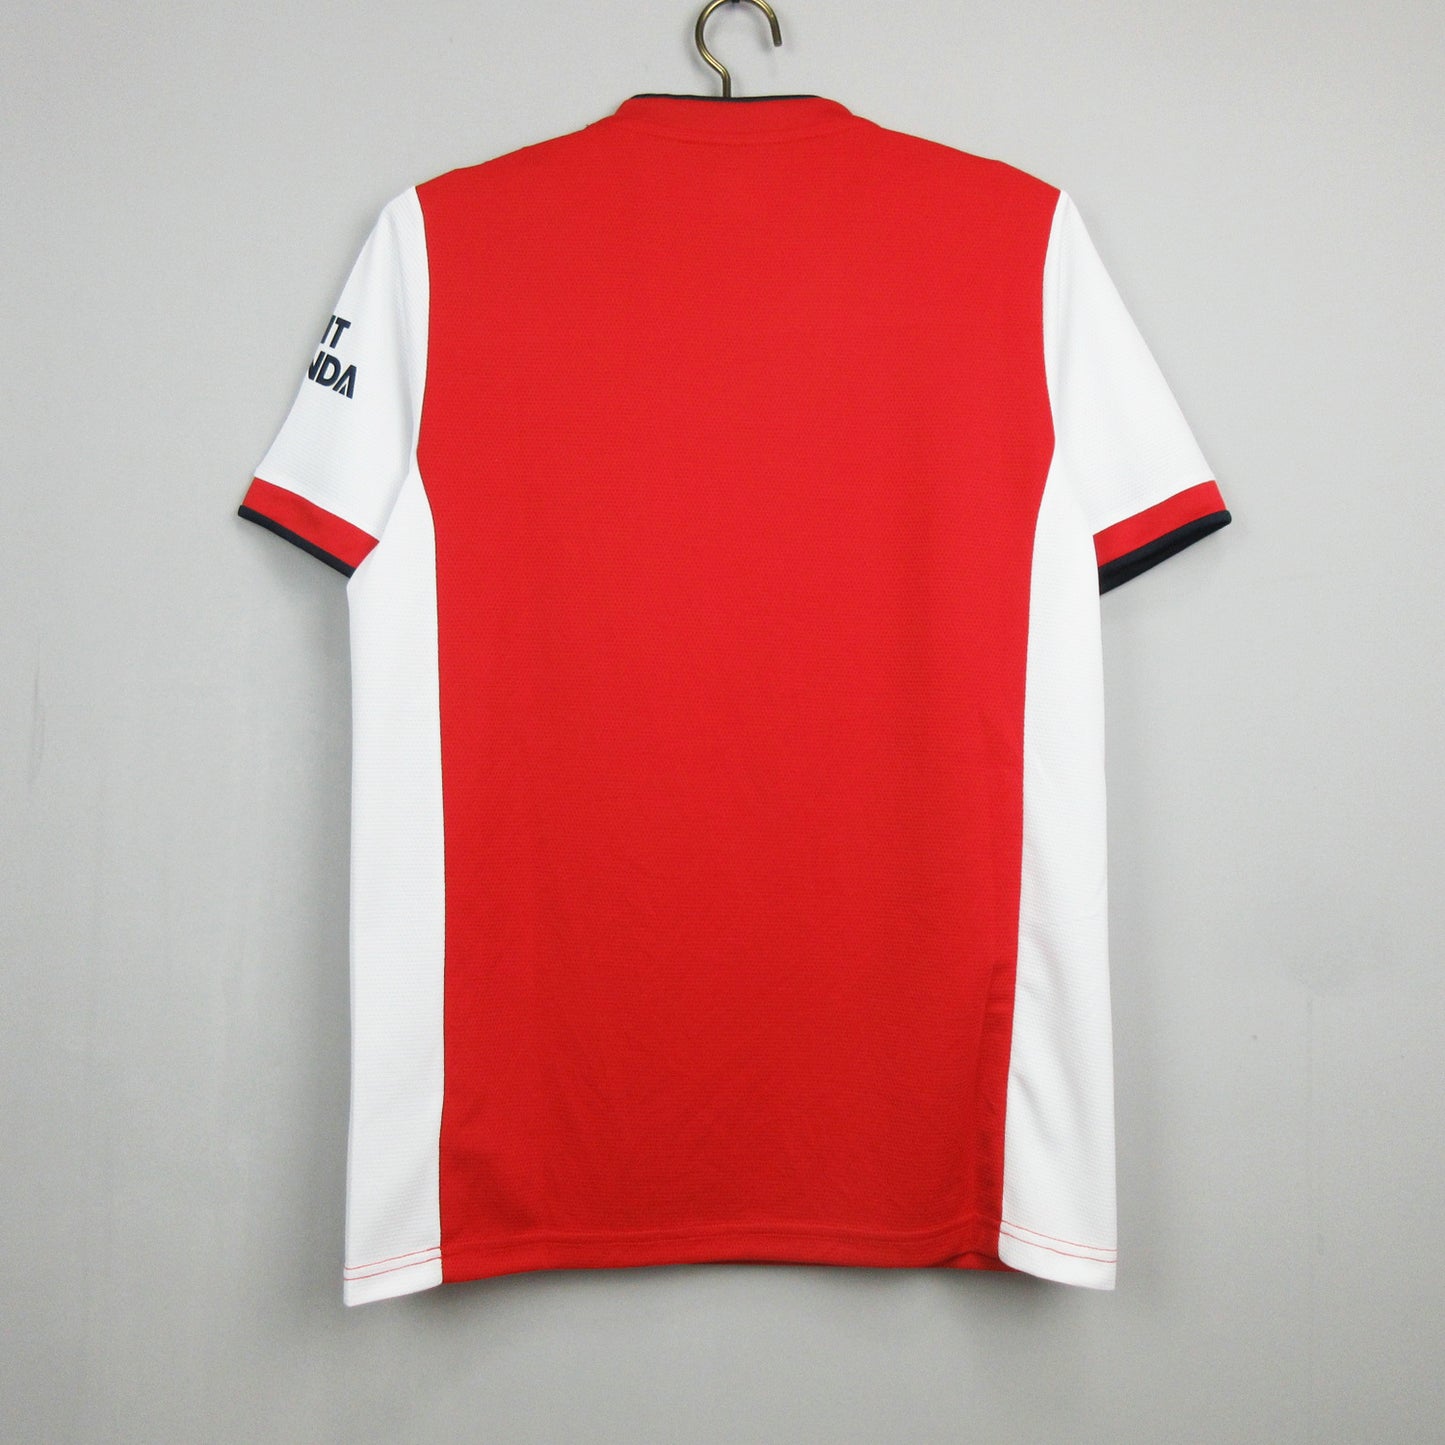 Arsenal home Kit Fan version 21/22